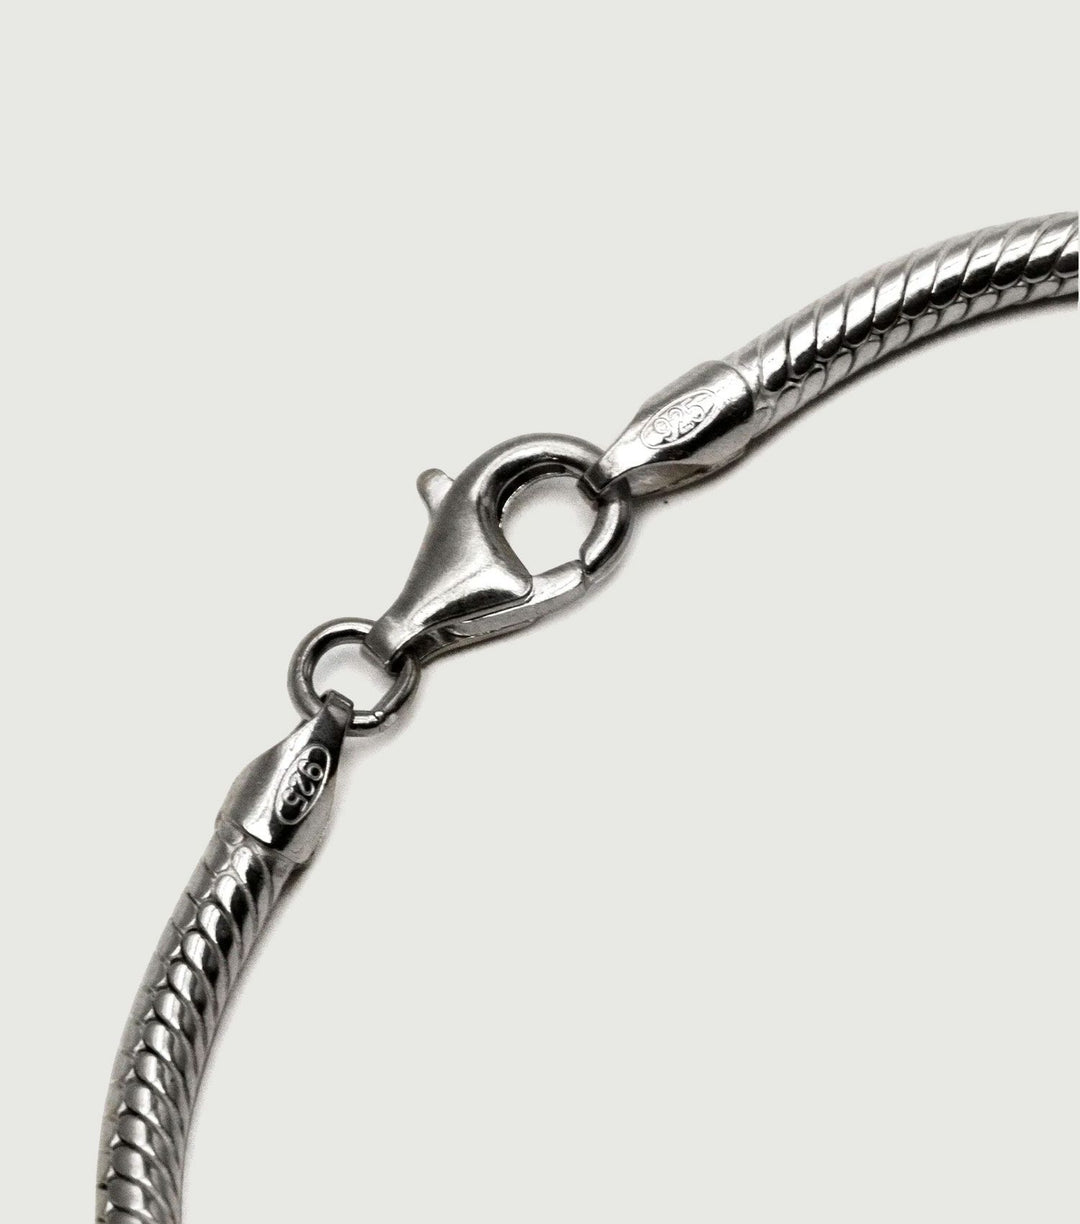 Bali Bracelet Silver - TwoJeys